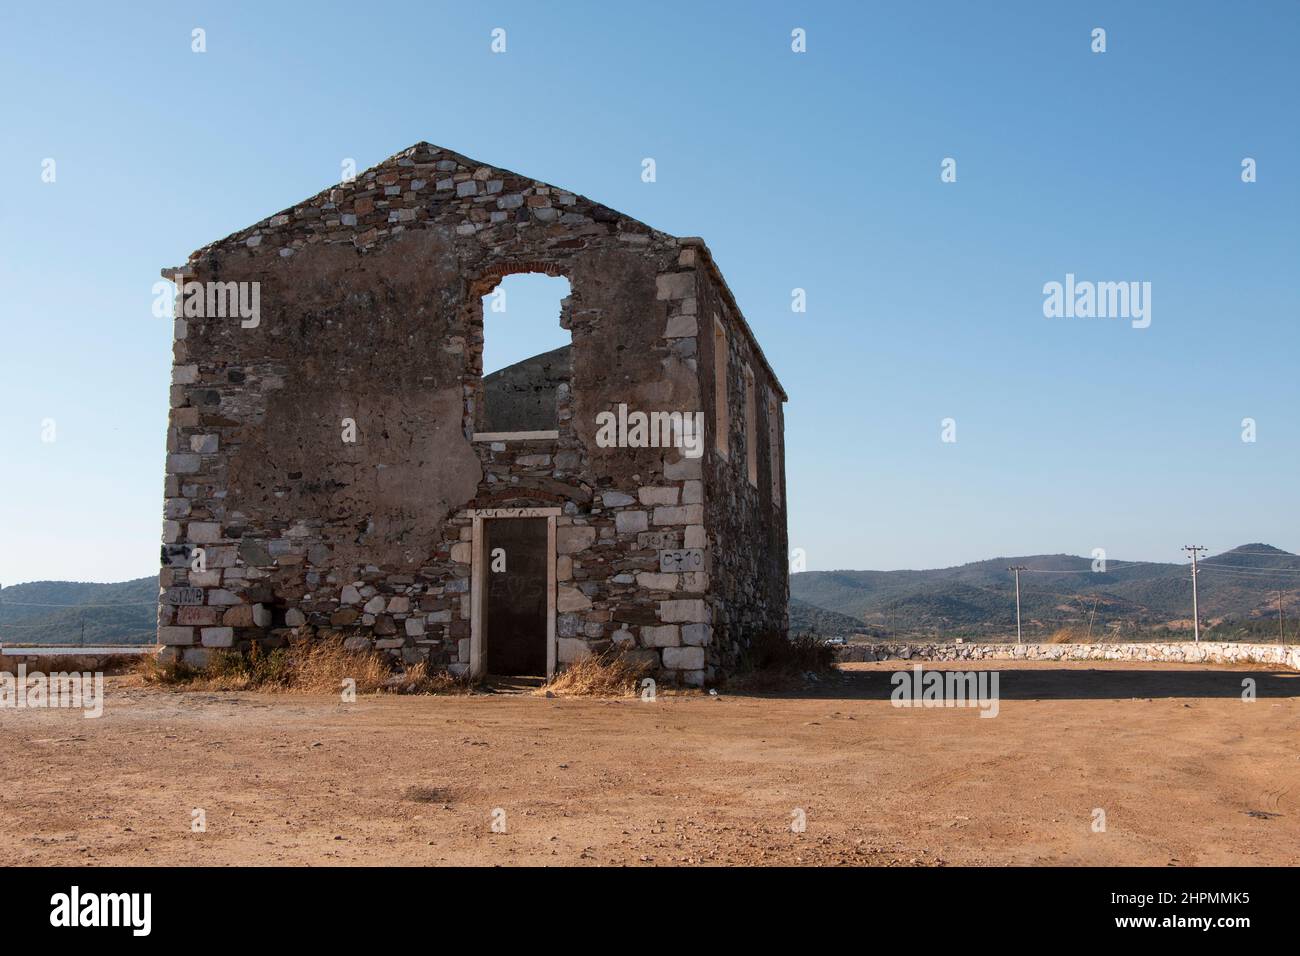 Casa de ruinas históricas cerca del lago. Edificio solitario en medio del lago. Foto de stock